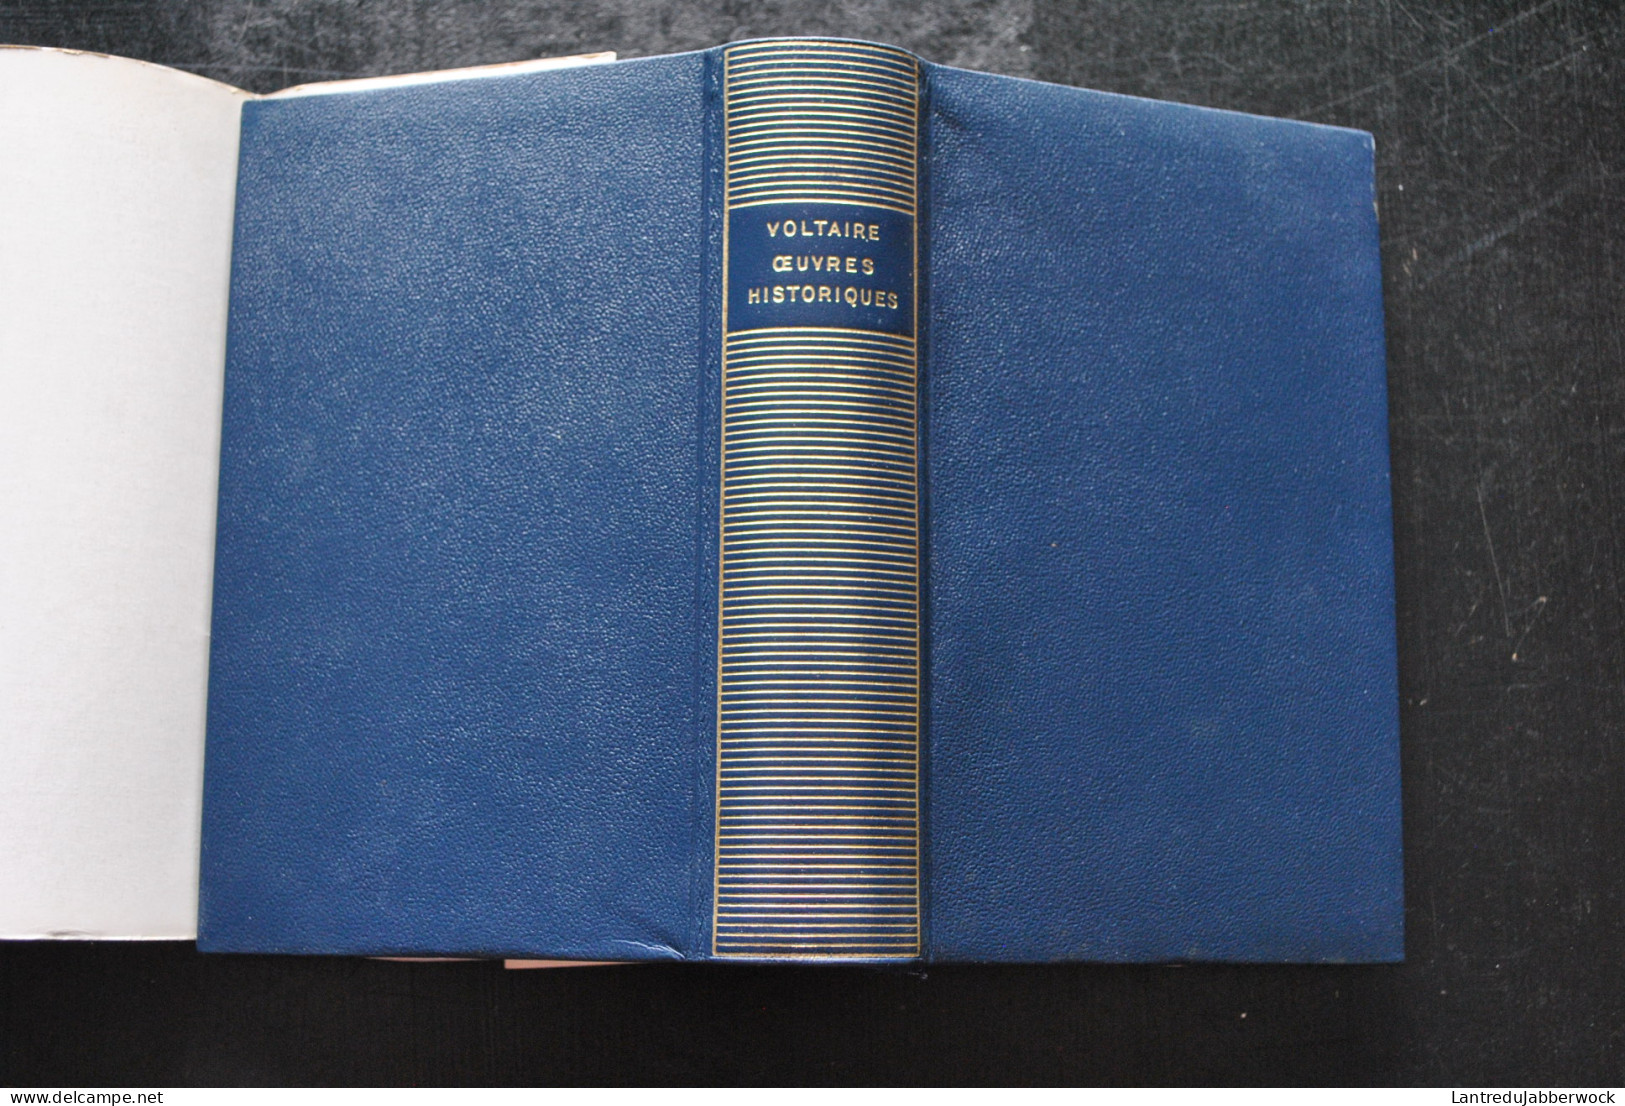 VOLTAIRE Oeuvres Historiques Bibliothèque De La Pléiade Nrf 1957 René Pommeau Rodhoïd Jaquette - La Pleiade